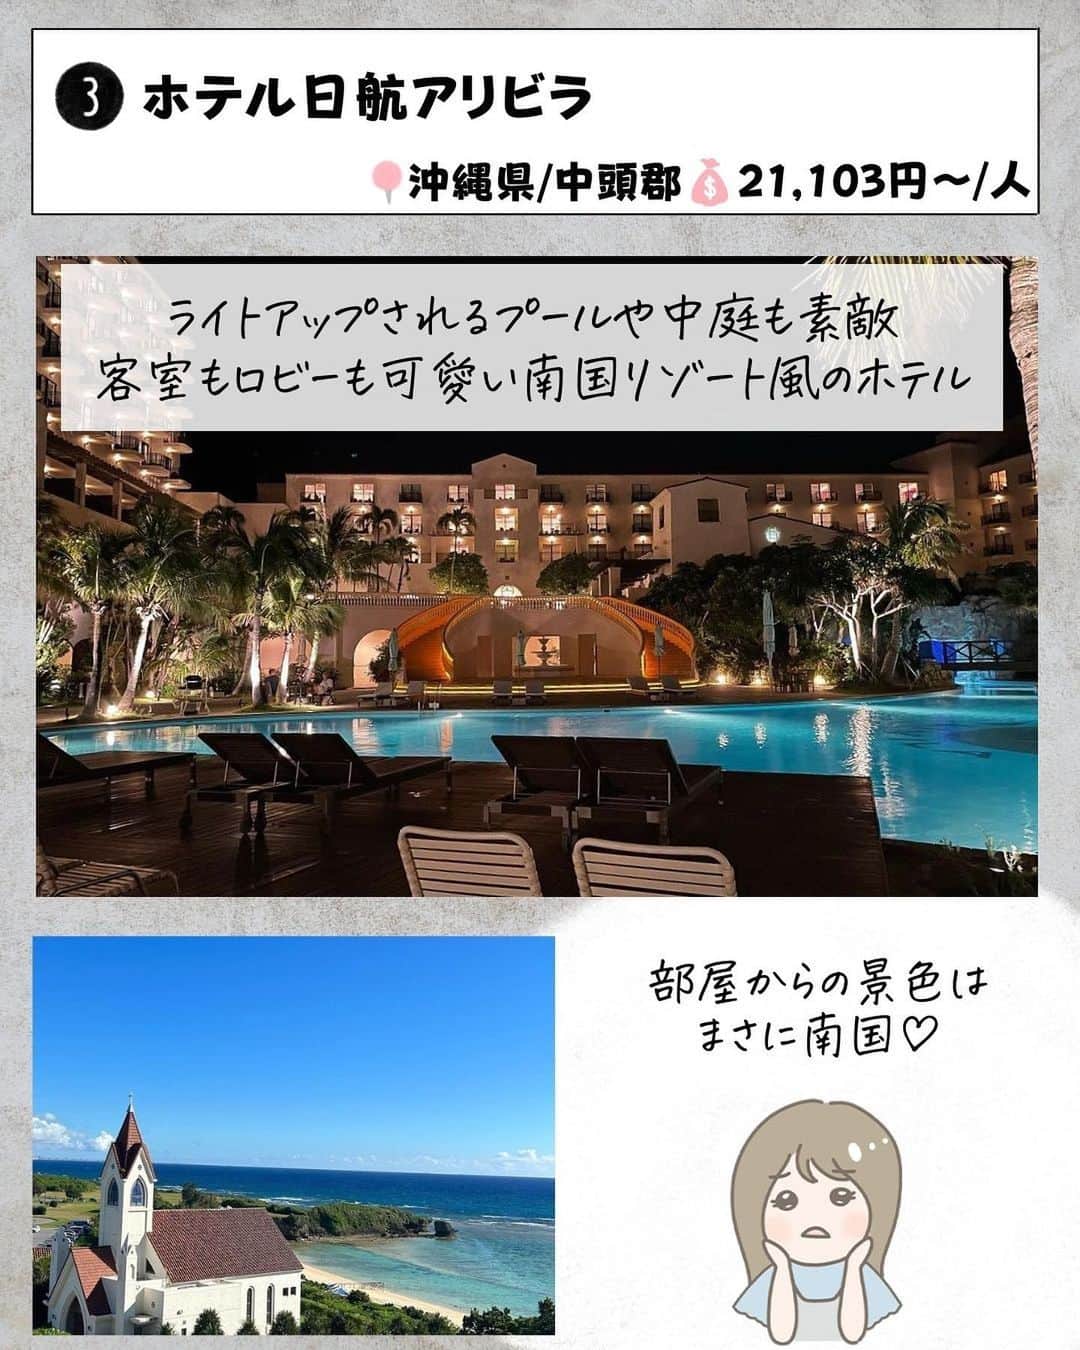 ぴち家さんのインスタグラム写真 - (ぴち家Instagram)「. お得を極めて旅に生きる夫婦、 ぴち家（@travelife_couple）です。 ⁡ 今回は「沖縄　絶景！オーシャンビューなホテル」の特集です。  青い空に青い海✨ 夏に行きたい場所、そう「沖縄！」  窓の外に広がる砂浜とビーチは 国内にいながら、 南国リゾート気分が楽しめちゃう😆   ゆっくりのんびり過ごすのもいいよね～🏝️   今回はそんなオーシャンビューホテルを集めました！✨   みんなの沖縄オススメホテルが あったらコメントで教えてね～☺️ ✨  ⁡ ※ホテル価格は楽天トラベルで検索した最安値を記載しています。 時期により変動があるため参考程度としてください！ ⁡ 【𝕚𝕟𝕗𝕠𝕣𝕞𝕒𝕥𝕚𝕠𝕟𓏗𓏗】  ❶ AQUASENSE Hotel&Resort  📍沖縄県国頭郡恩納村字冨着黒崎原86番1 （写真:@seik_a__様より）  ❷ ホテルオリオンモトブリゾート＆スパ 📍沖縄県国頭郡本部町備瀬148-1 ⁡（写真:m_um_r1018様より）  ❸ ホテル日航アリビラ 📍沖縄県中頭郡読谷村字儀間600 （写真:@ofumi828様　@_ssern__様より）  ❹ ベストウェスタン沖縄幸喜ビーチ 📍沖縄県名護市幸喜117 ⁡（写真:@yaskoolina様より）  ➎ 沖縄プリンスホテル オーシャンビューぎのわん 📍沖縄県宜野湾市真志喜3丁目28-1 （写真:@citrus_kiss様より）  ❻ サザンビーチホテル&リゾート沖縄 📍沖縄県糸満市西崎町1丁目6−1 ⁡（写真:@yana_masa.8703様　@uchan922様より）  ➐ 沖縄かりゆしビーチリゾート・オーシャンスパ 📍沖縄県国頭郡恩納村名嘉真ヤーシ原2591-1 （写真:@mikis_family_travel_record様　@kanalunani様より）  ーーーーーーーーーーーーーーーーーー✽ ⁡ ぴち家（@travelife_couple）って？ ⁡ バン🚐で旅してホテルやスポット巡り！ お得旅行が大好きな夫婦です。 ⁡ ✔旅行先やホテル ✔観光スポット・グルメまとめ ✔旅費を作るためのお金の話を発信中𓂃𓈒𓏸 ⁡ ⁡ また本アカウント以外にも、以下を運営しております。 少しでも役立ちそう、応援してもいいと思って 頂ける方はフォローよろしくお願いしますˎˊ˗ ⁡ 📷日常・写真メインの旅行情報 →@travelife_diary （フォロワー4万超） ⁡ 🔰初心者必見のお金・投資情報 →@yuki_moneylife （フォロワー11万超） ⁡ 🎥旅行ムービー発信のTiktok → @ぴち家（フォロワー2.5万超） ⁡ 【テーマ】 「旅行をもっと身近に✈️」 これまで厳しい状況が続いてきた旅行・飲食業界を盛り上げたい！ より多くの人にワクワクする旅行先を知って もらえるよう、またお得に旅行が出来るよう、 夫婦二人で発信を頑張っています。 　 【お願い】 応援して頂けるフォロワーの皆様、及び 取材させて頂いている企業様にはいつも感謝しております！🙇‍♂️🙇‍♀️ お仕事依頼も承っておりますので、 応援頂ける企業・自治体様はぜひ プロフィールのお問合せよりご連絡お願いします。 ⁡ ぴち家(@travelife_couple) ⁡ ✽ーーーーーーーーーーーーーーーーー ⁡ #アクアセンスホテルアンドリゾート #ホテルオリオンモトブリゾートアンドスパ #ホテル日航アリビラ #ベストウェスタン沖縄幸喜ビーチ #沖縄プリンスホテルオーシャンビューぎのわん #サザンビーチホテルリゾート沖縄 #沖縄かりゆしビーチリゾートオーシャンスパ #沖縄ホテル #ぴちホテルまとめ」8月19日 20時04分 - travelife_couple